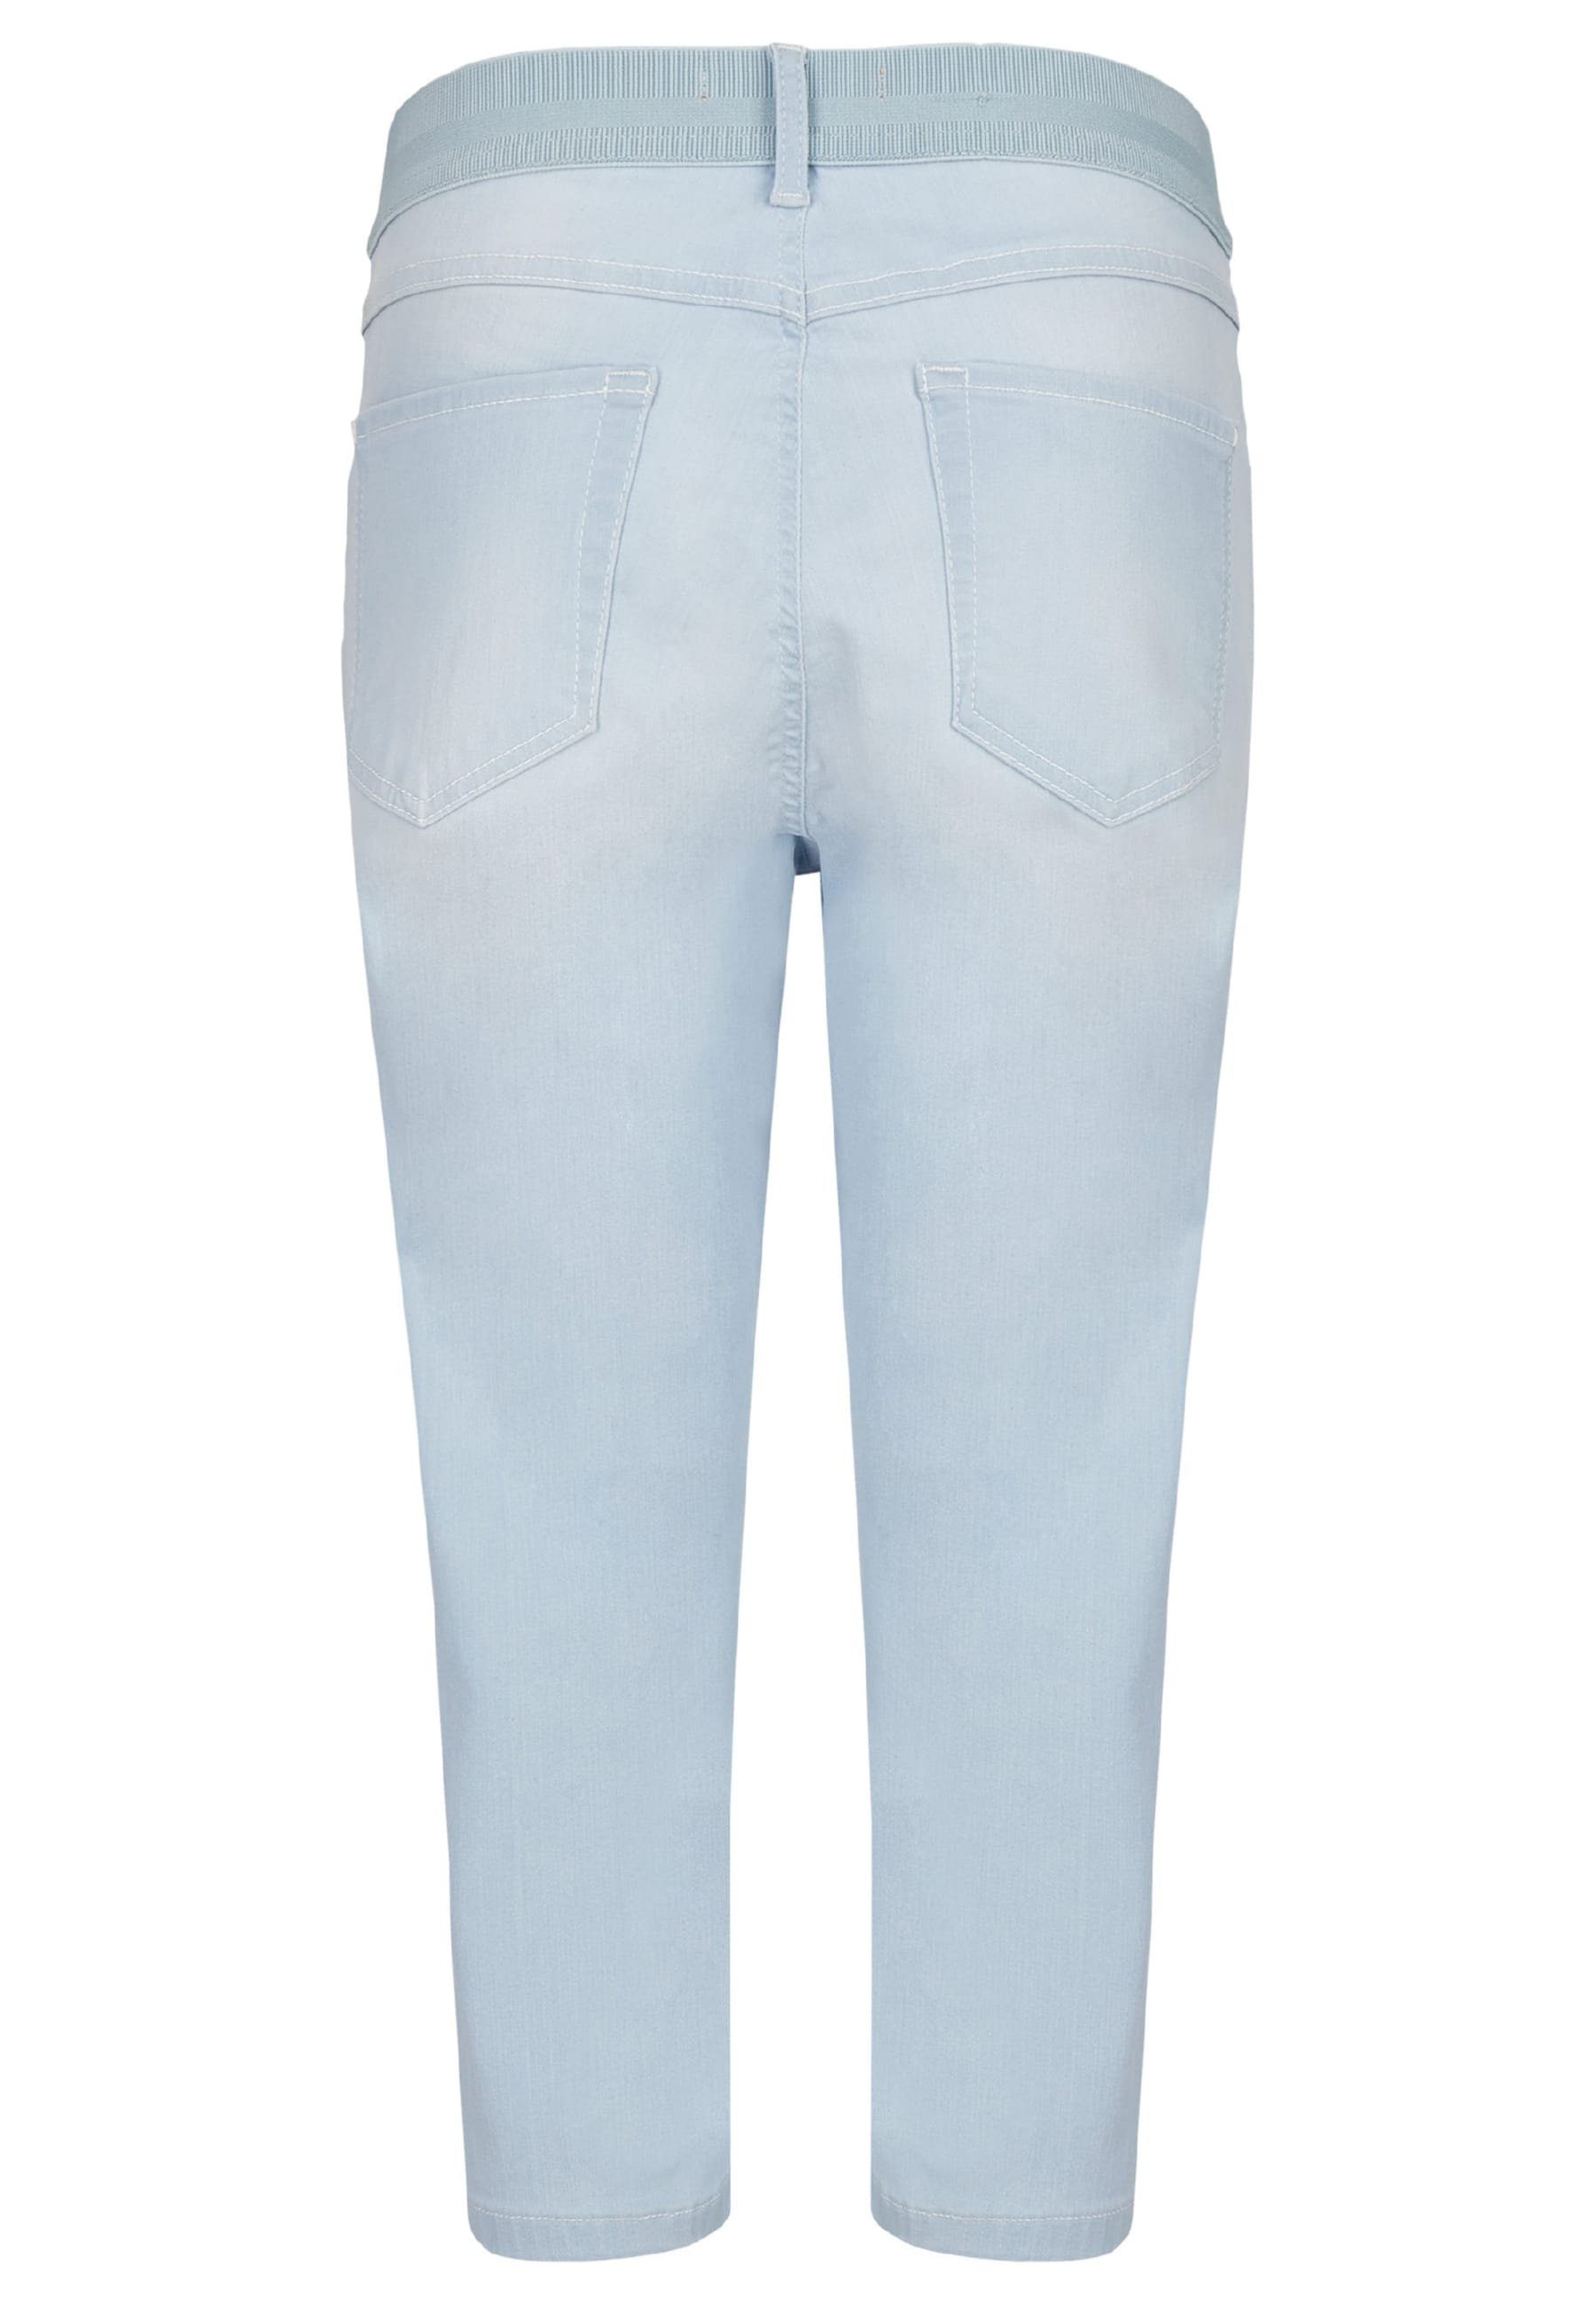 Dehnbund-Jeans Jeans Kurze Design Onesize ANGELS mit klassischem hellblau Capri